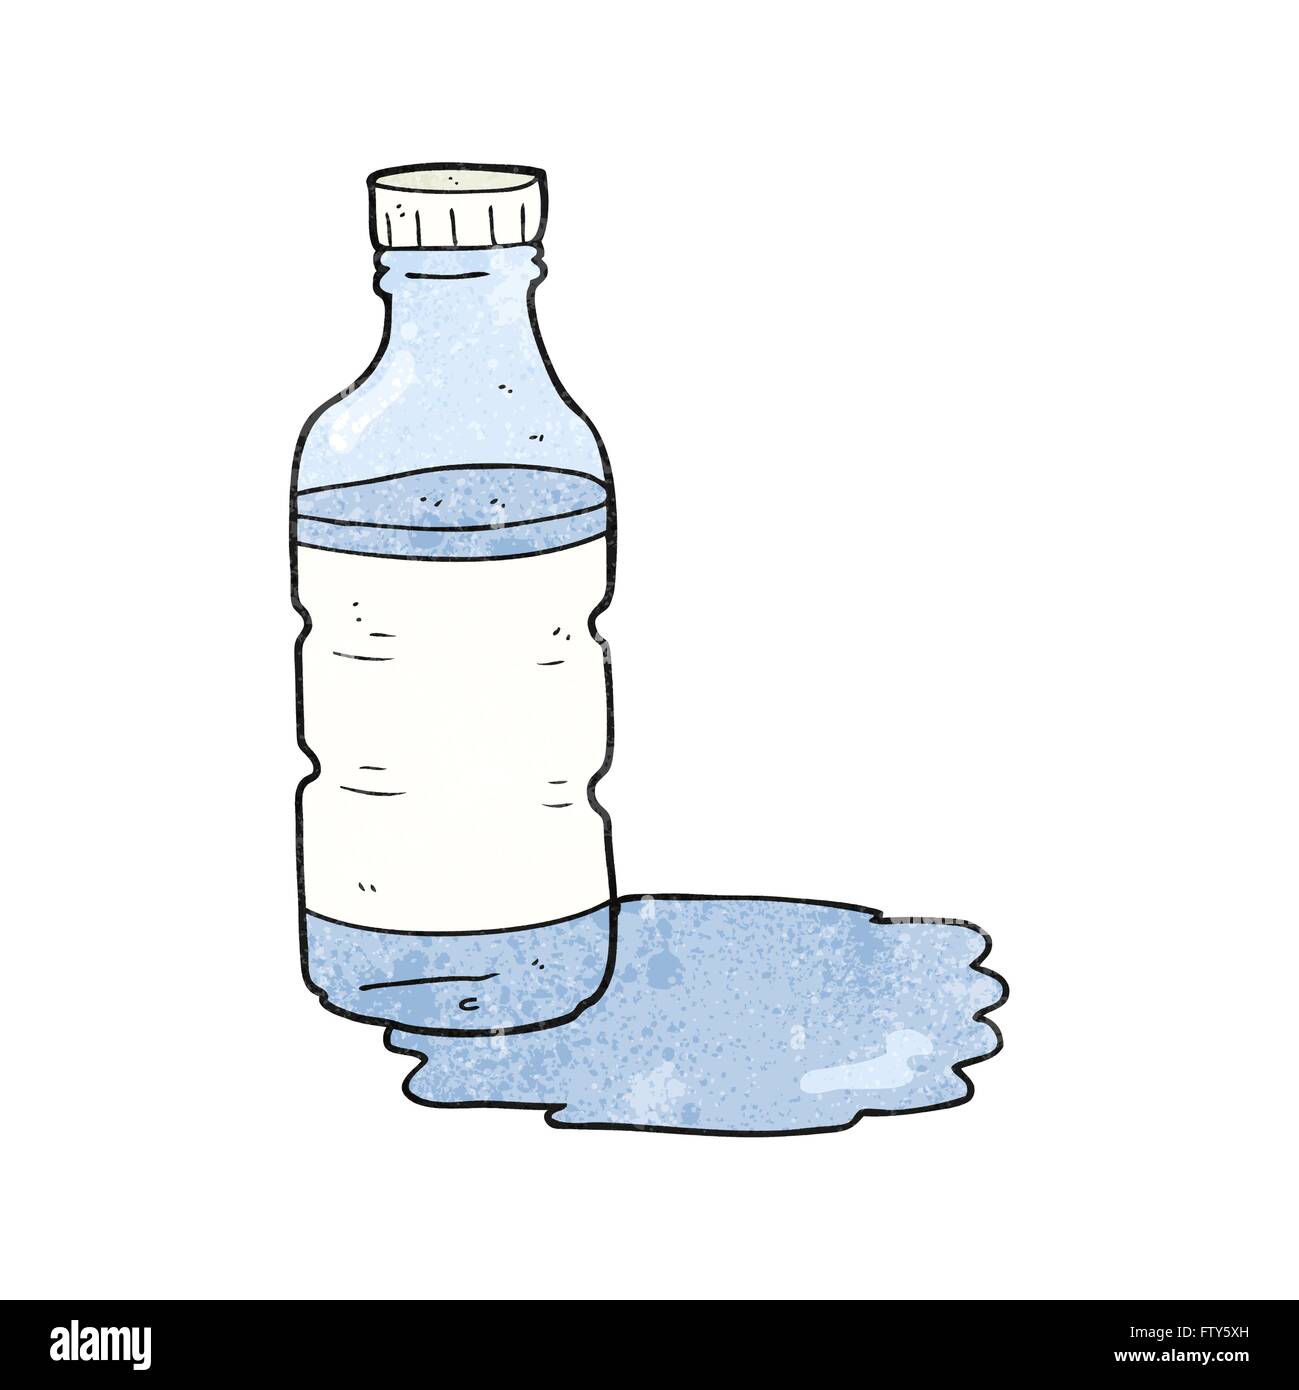 Грязная вода в бутылке